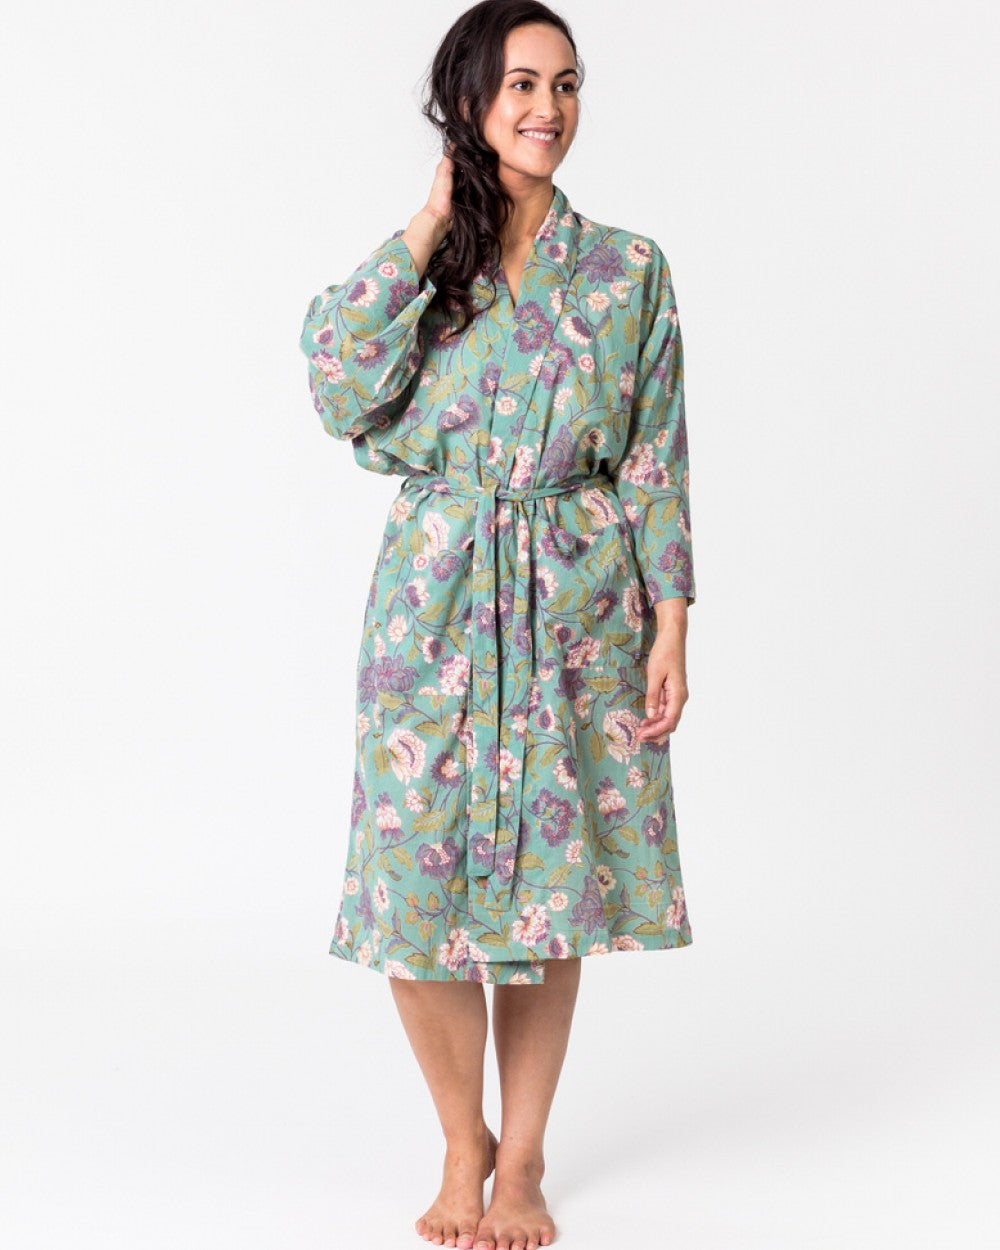 Lily Aqua kimono cotton robe by Floressents